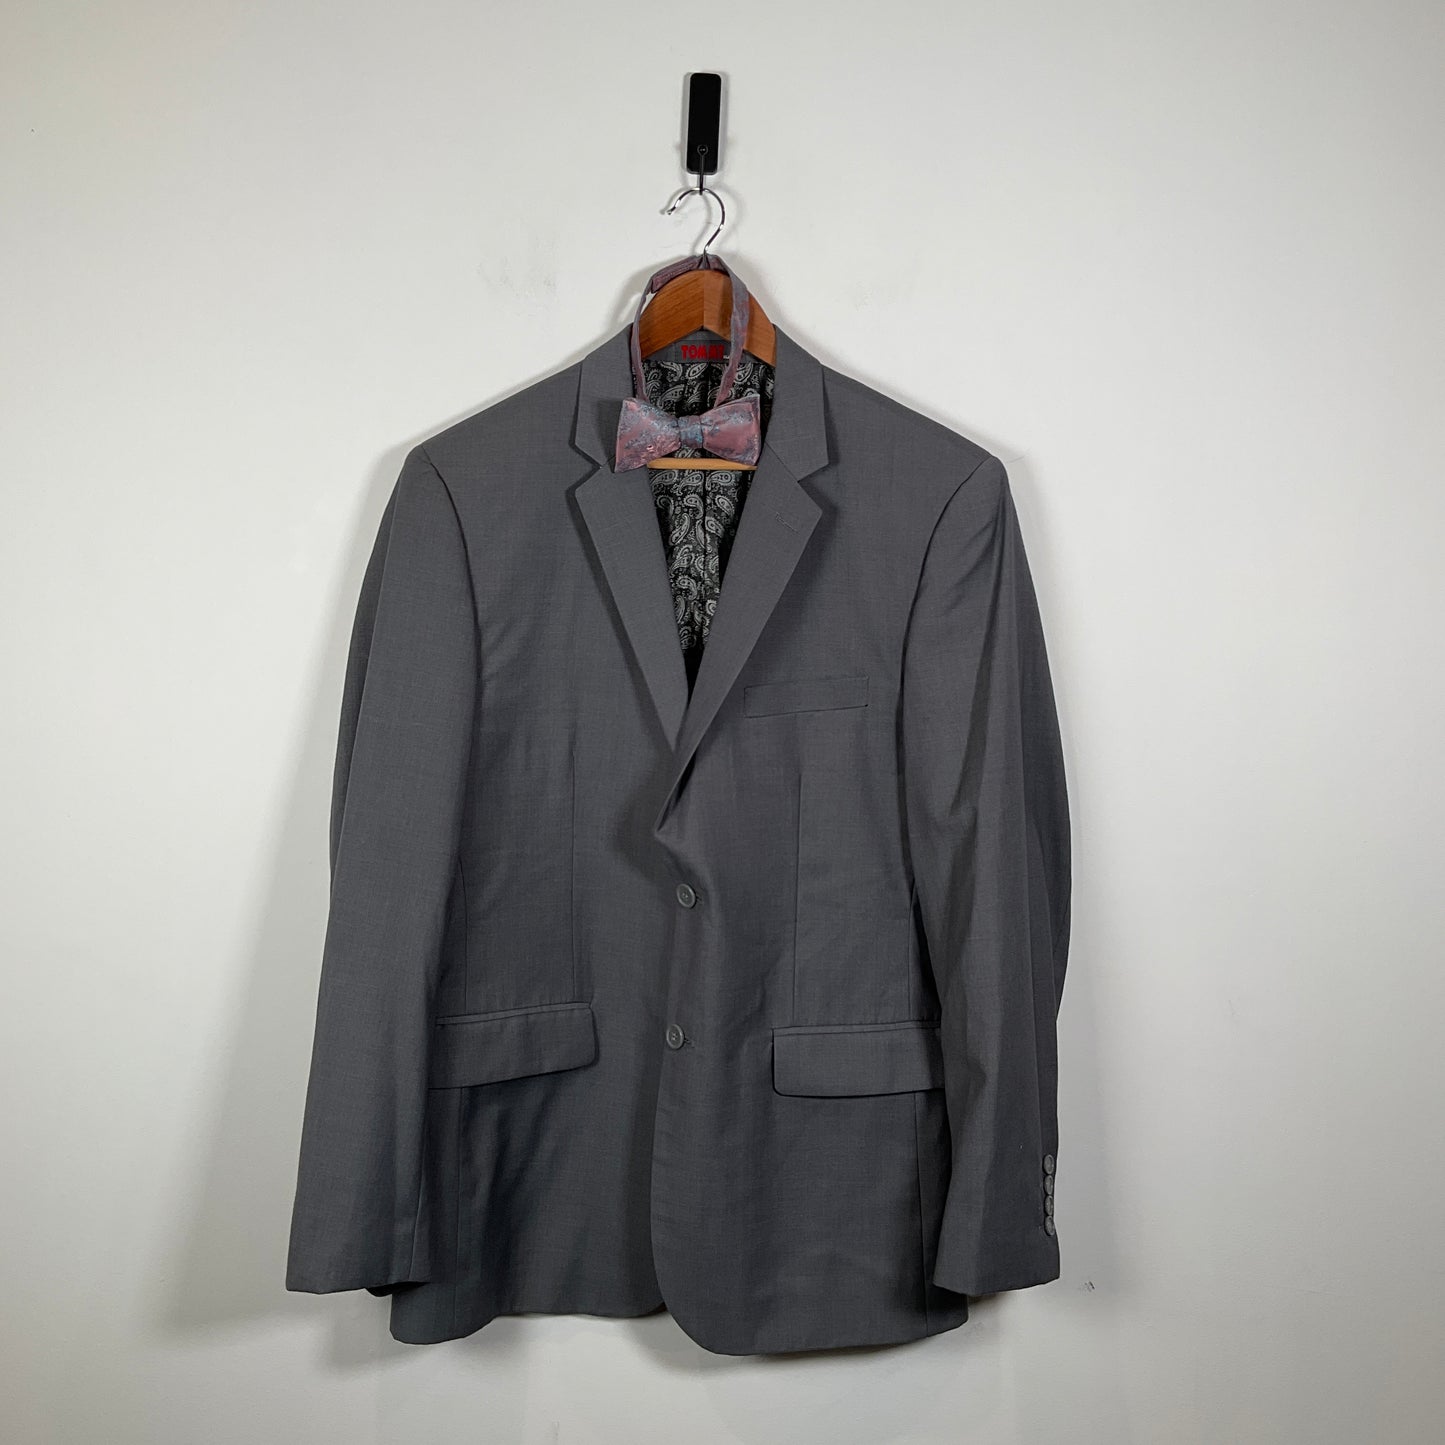 Tommy - Suit Jacket, Vest, Bow Tie Set & Pocket Square